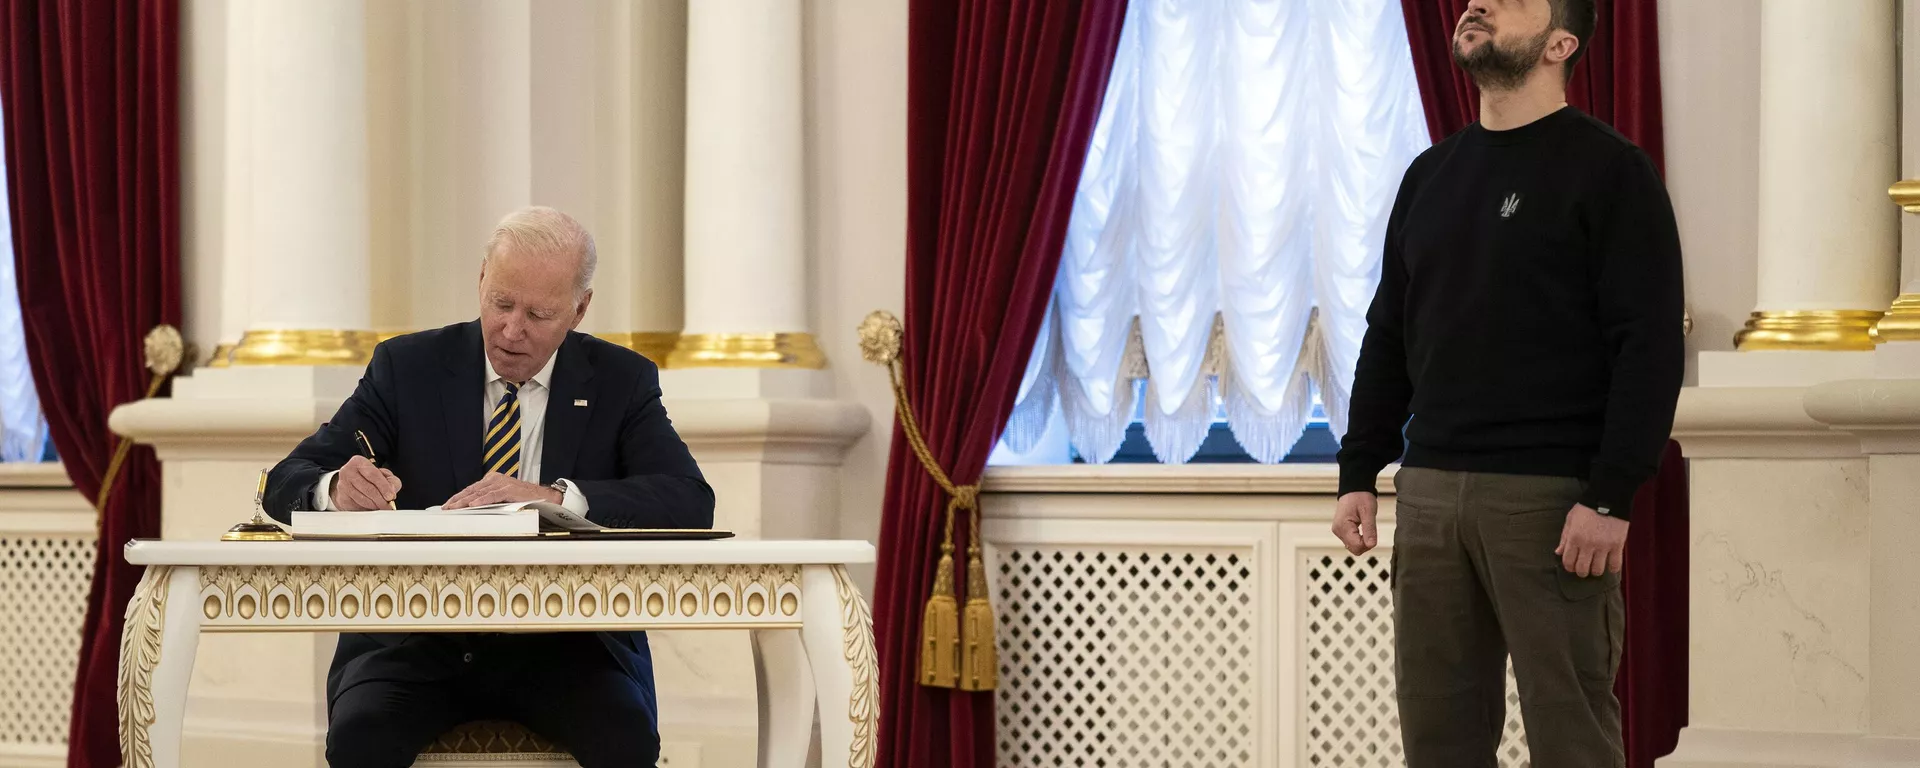 El presidente de Estados Unidos, Joe Biden, firma un libro de visitas durante una reunión con el presidente ucraniano, Vladimir Zelensky. Kiev, 20 de febrero de 2023 - Sputnik Brasil, 1920, 12.12.2023